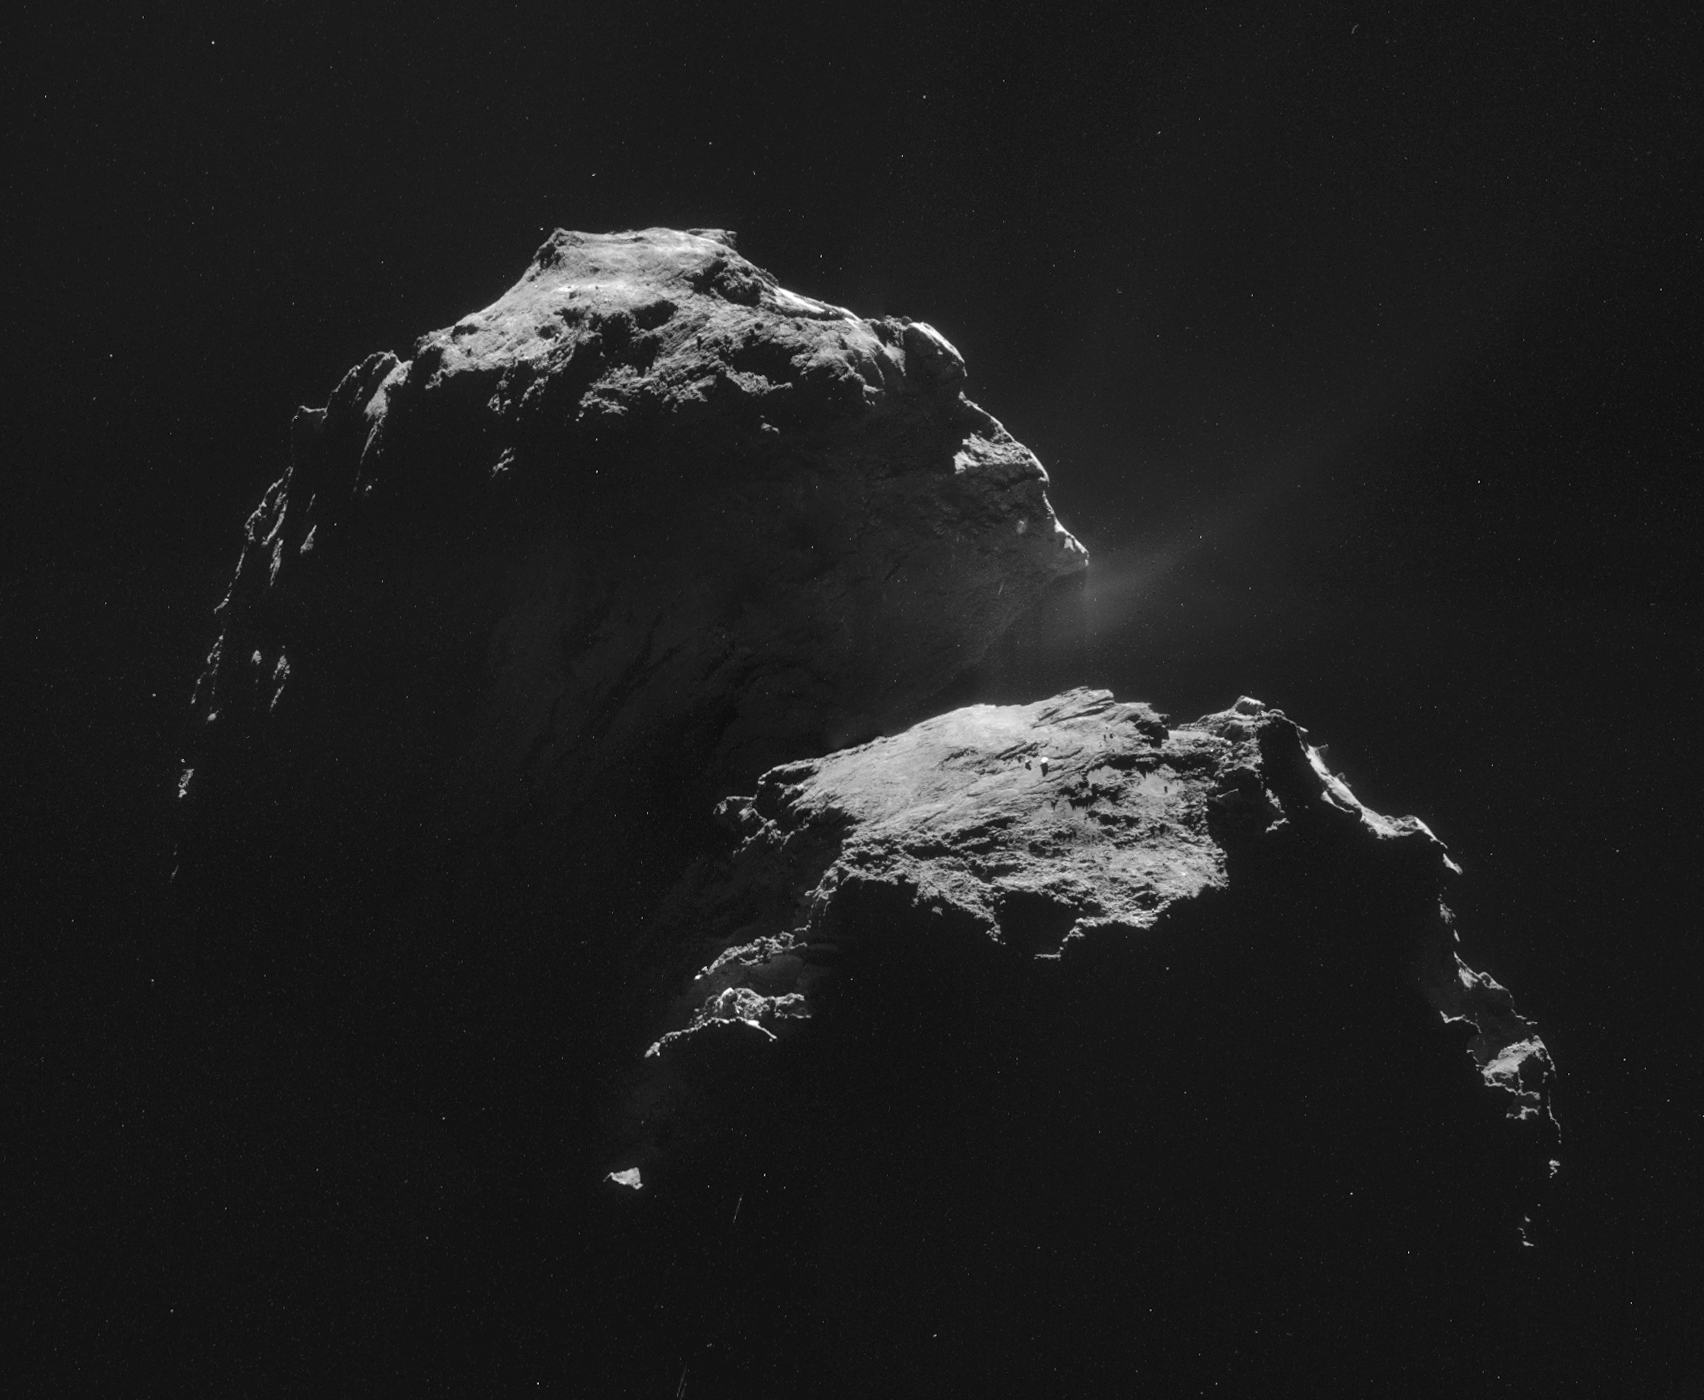 File:Comet 67P on 4 November 2014 NavCam mosaic.jpg